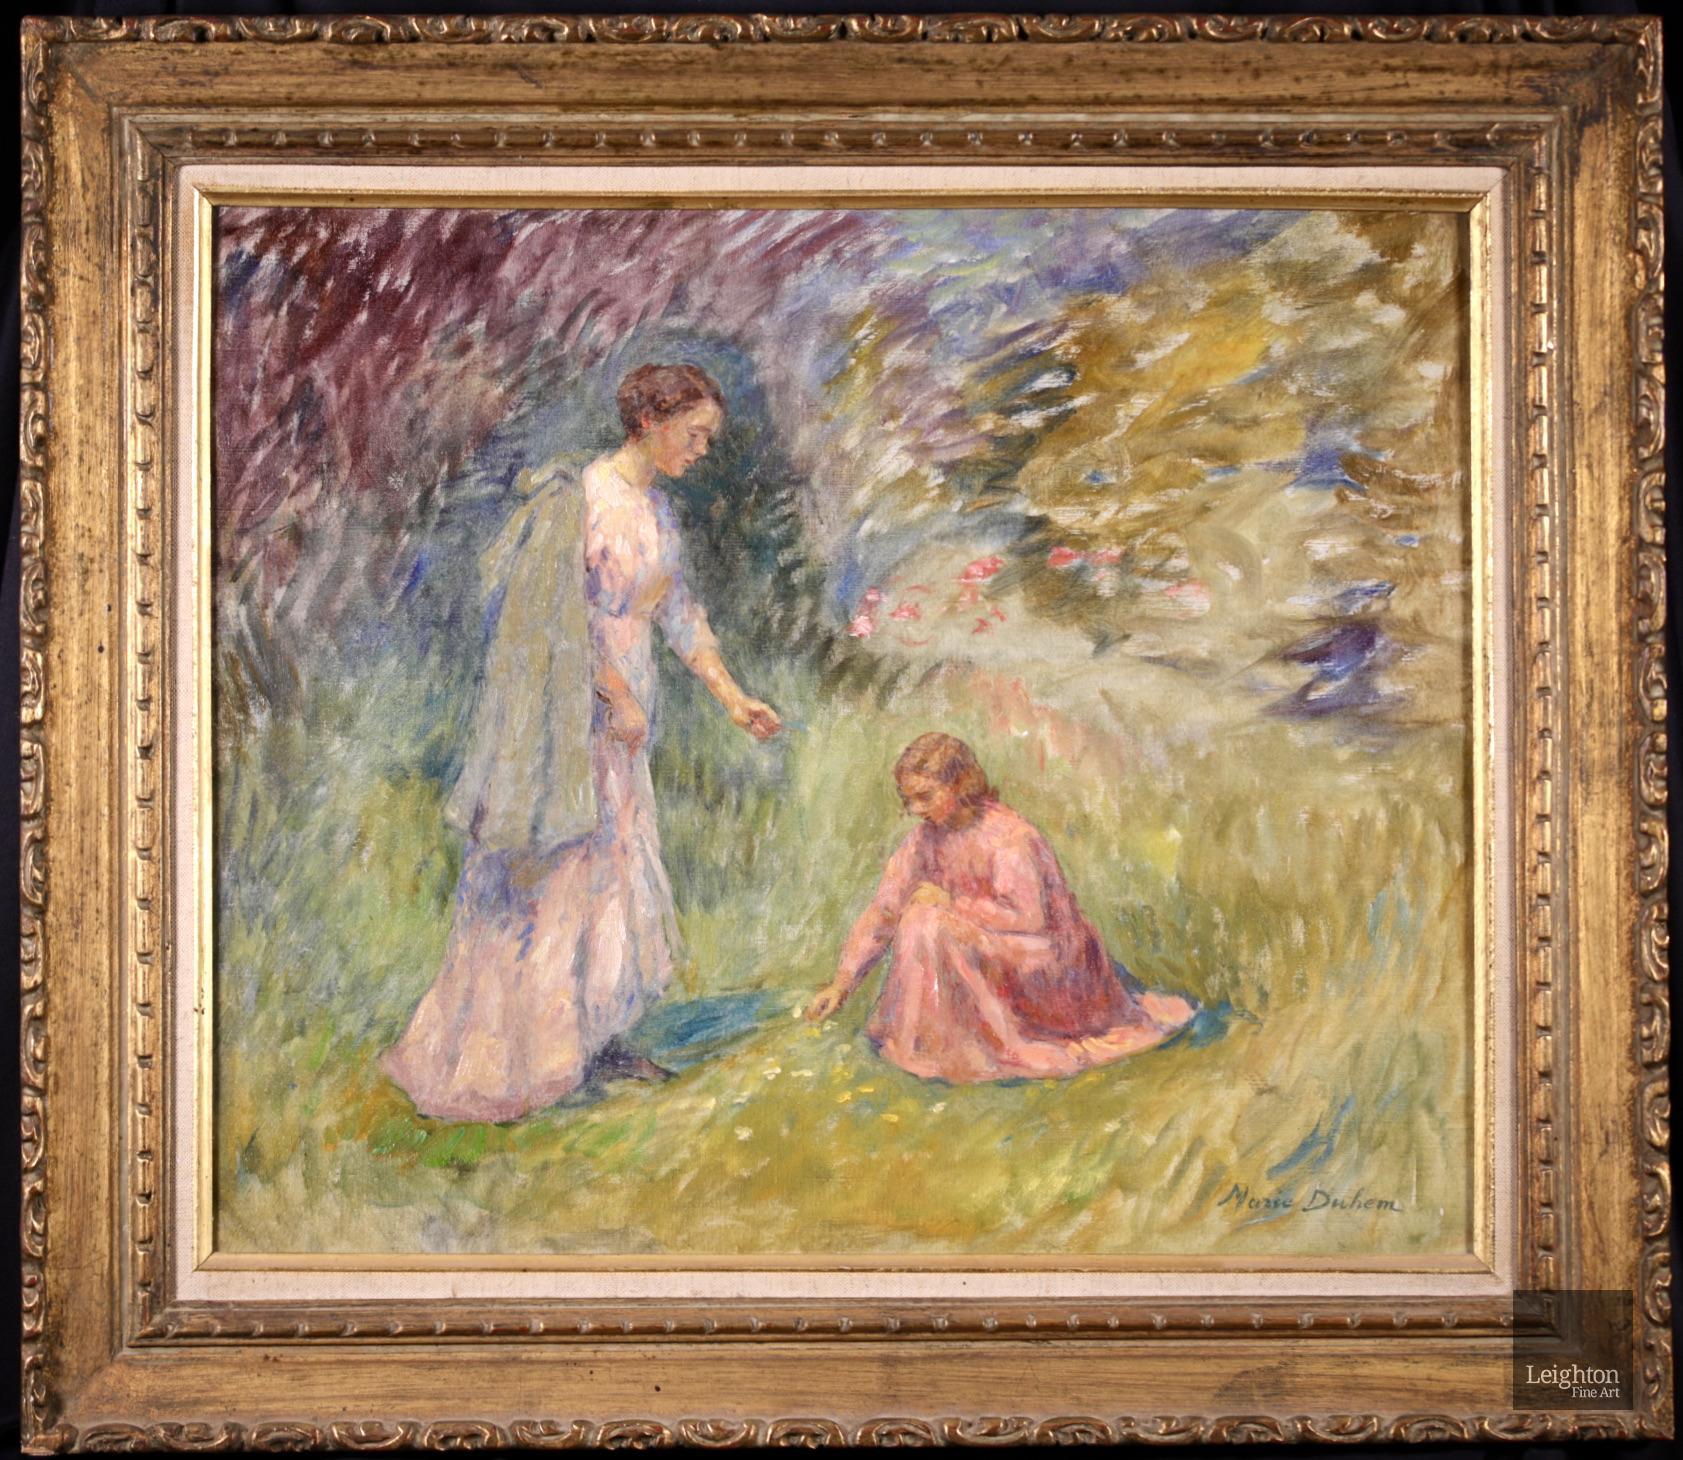 Superbe huile impressionniste sur toile originale signée et datée de 1920 par l'artiste peintre française Marie Duhem. L'œuvre représente une femme vêtue d'une robe rose pâle et d'une veste verte drapée sur les épaules, debout à côté d'une jeune